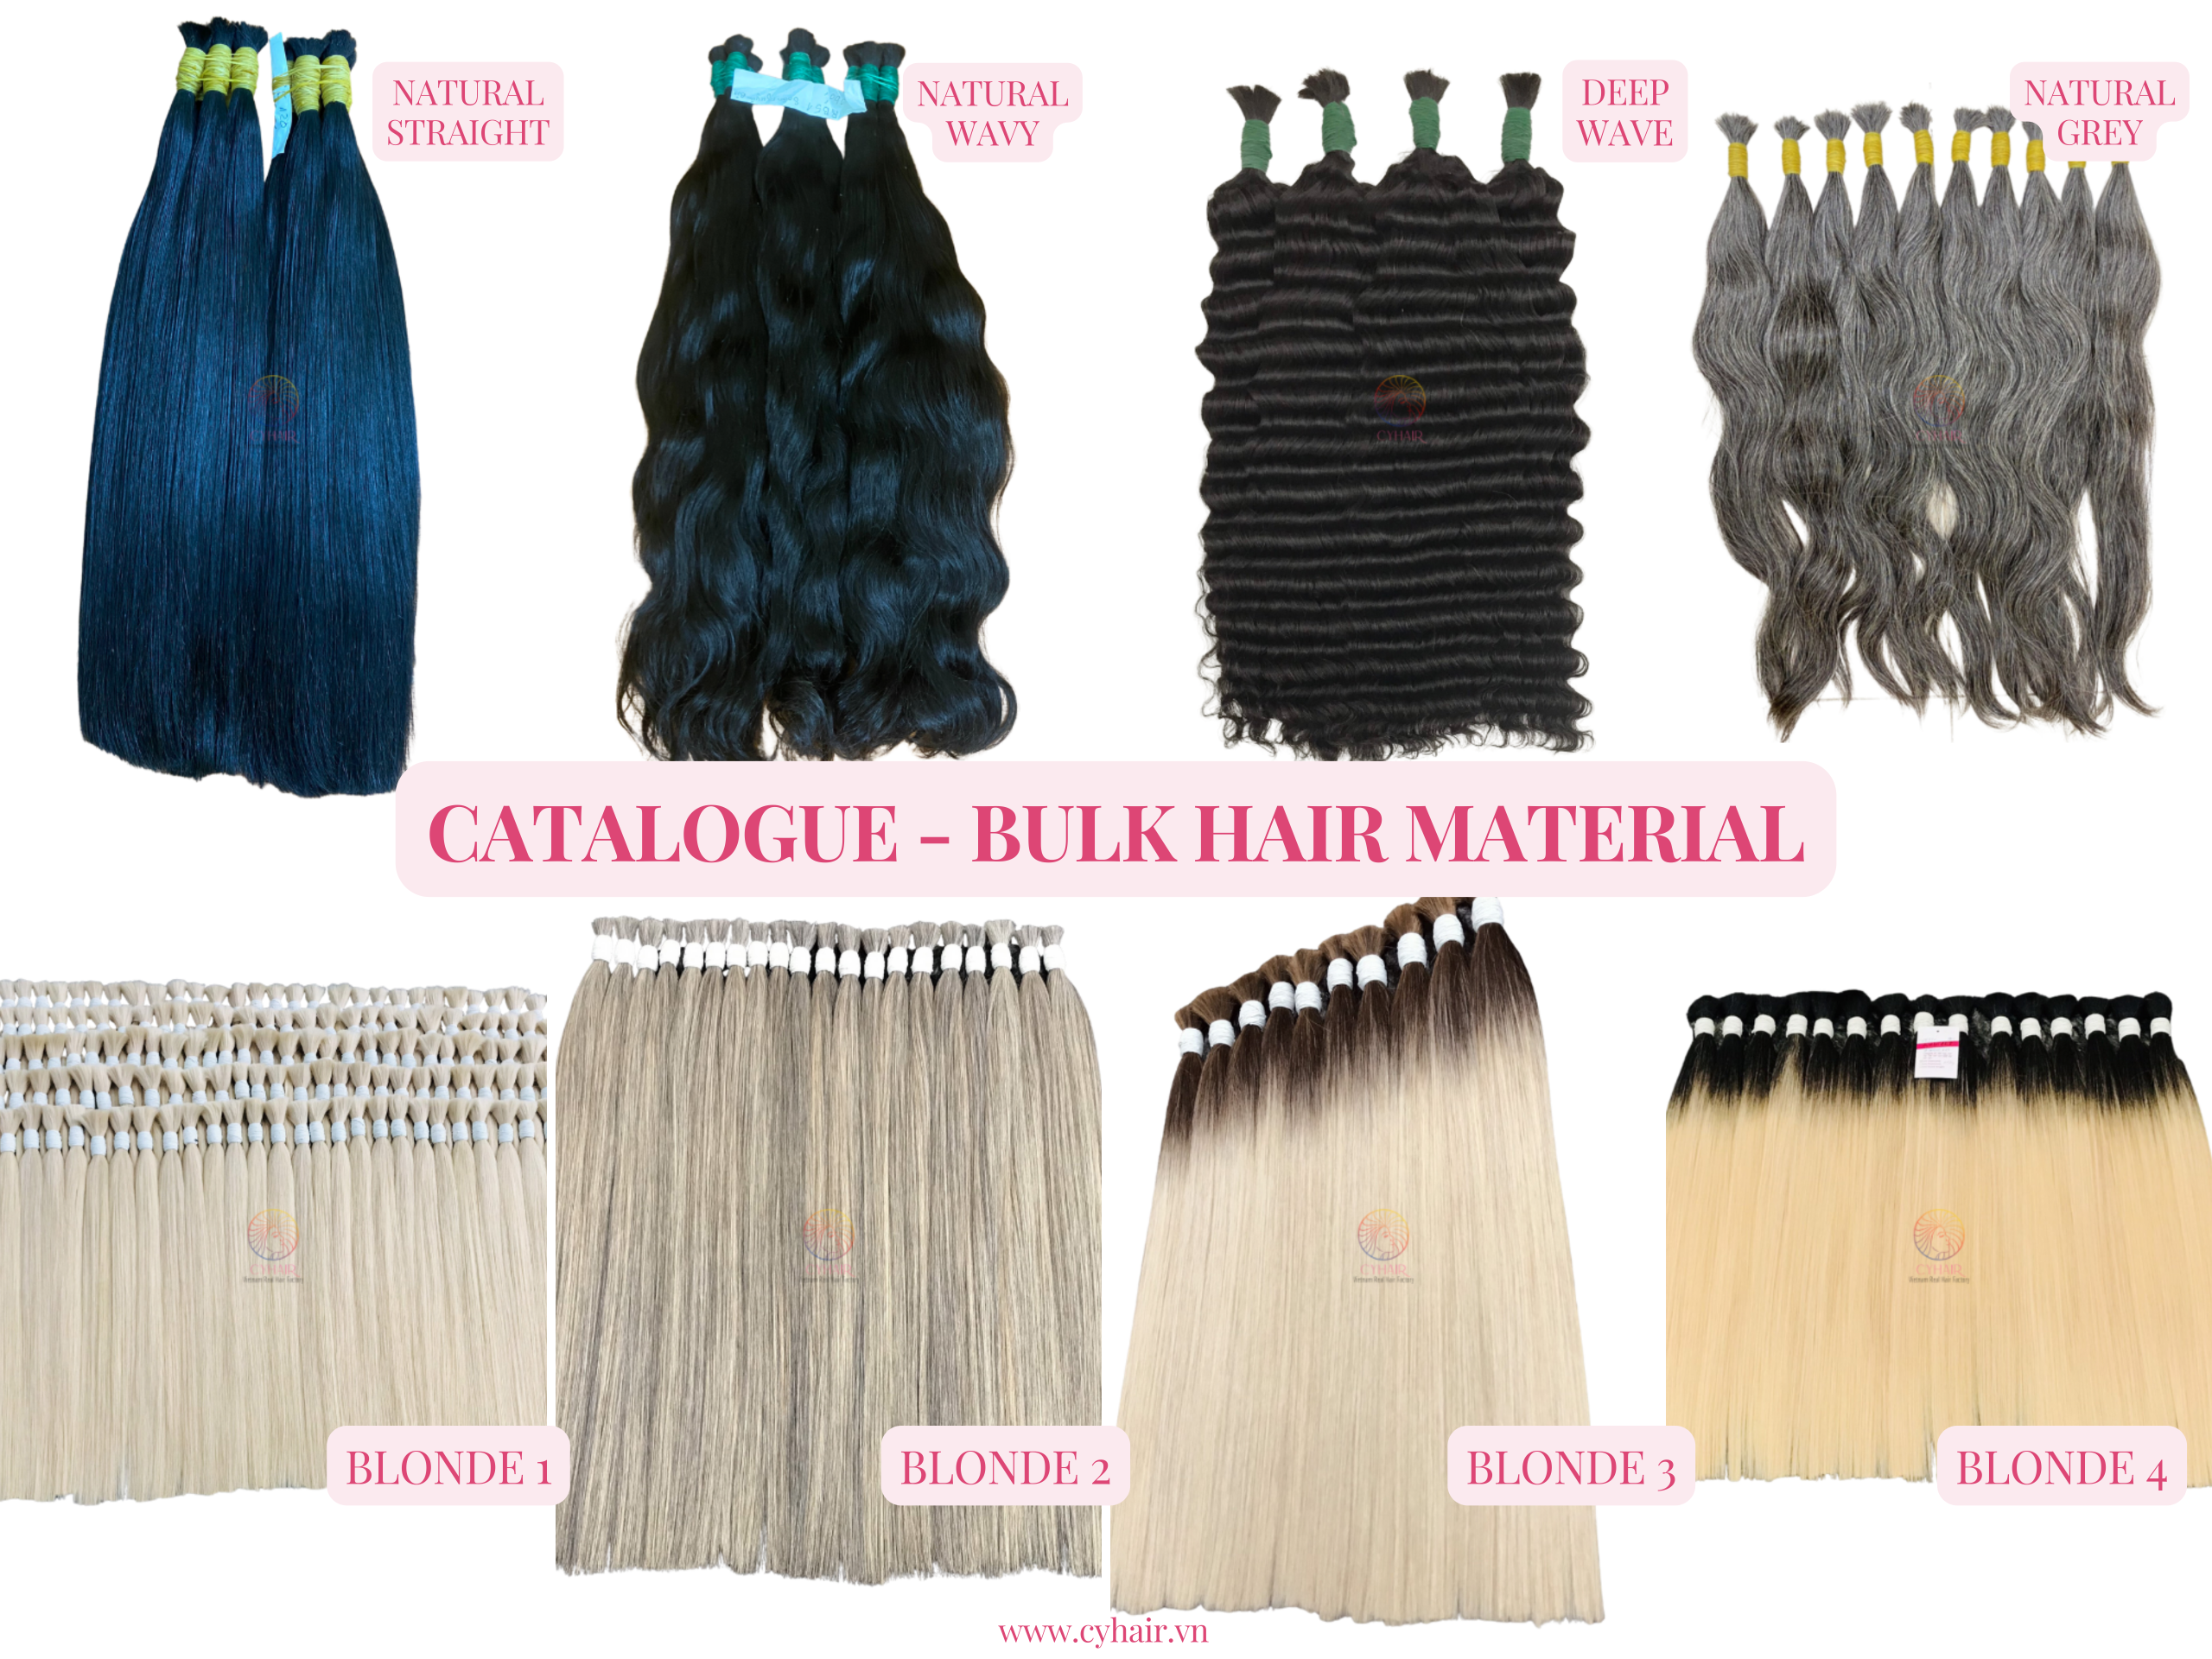 Bulk Hair Material For Brazil Market